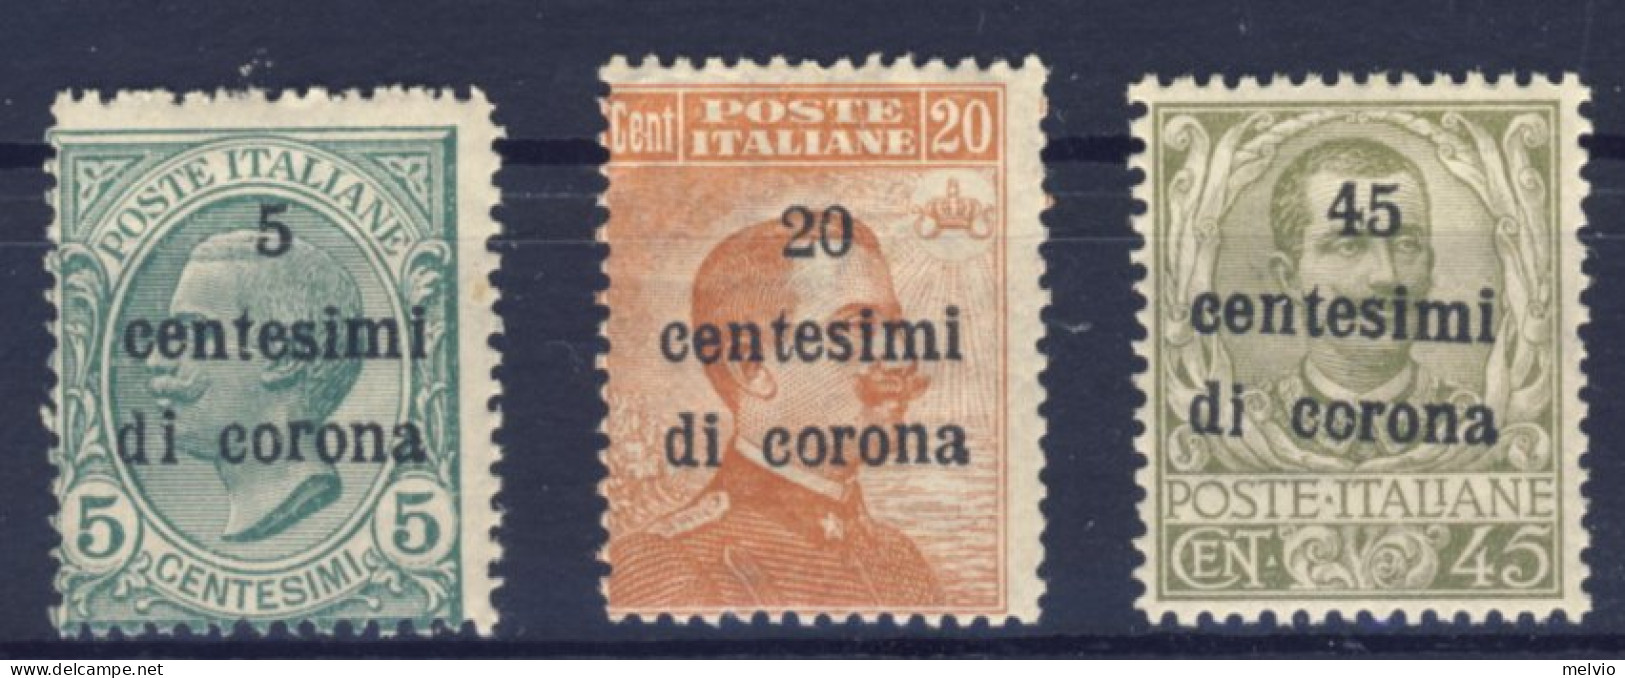 1919-Trento E Trieste (MNH=**) Tre Valori, Il 45c. Con Ottima Centratura - Trente & Trieste